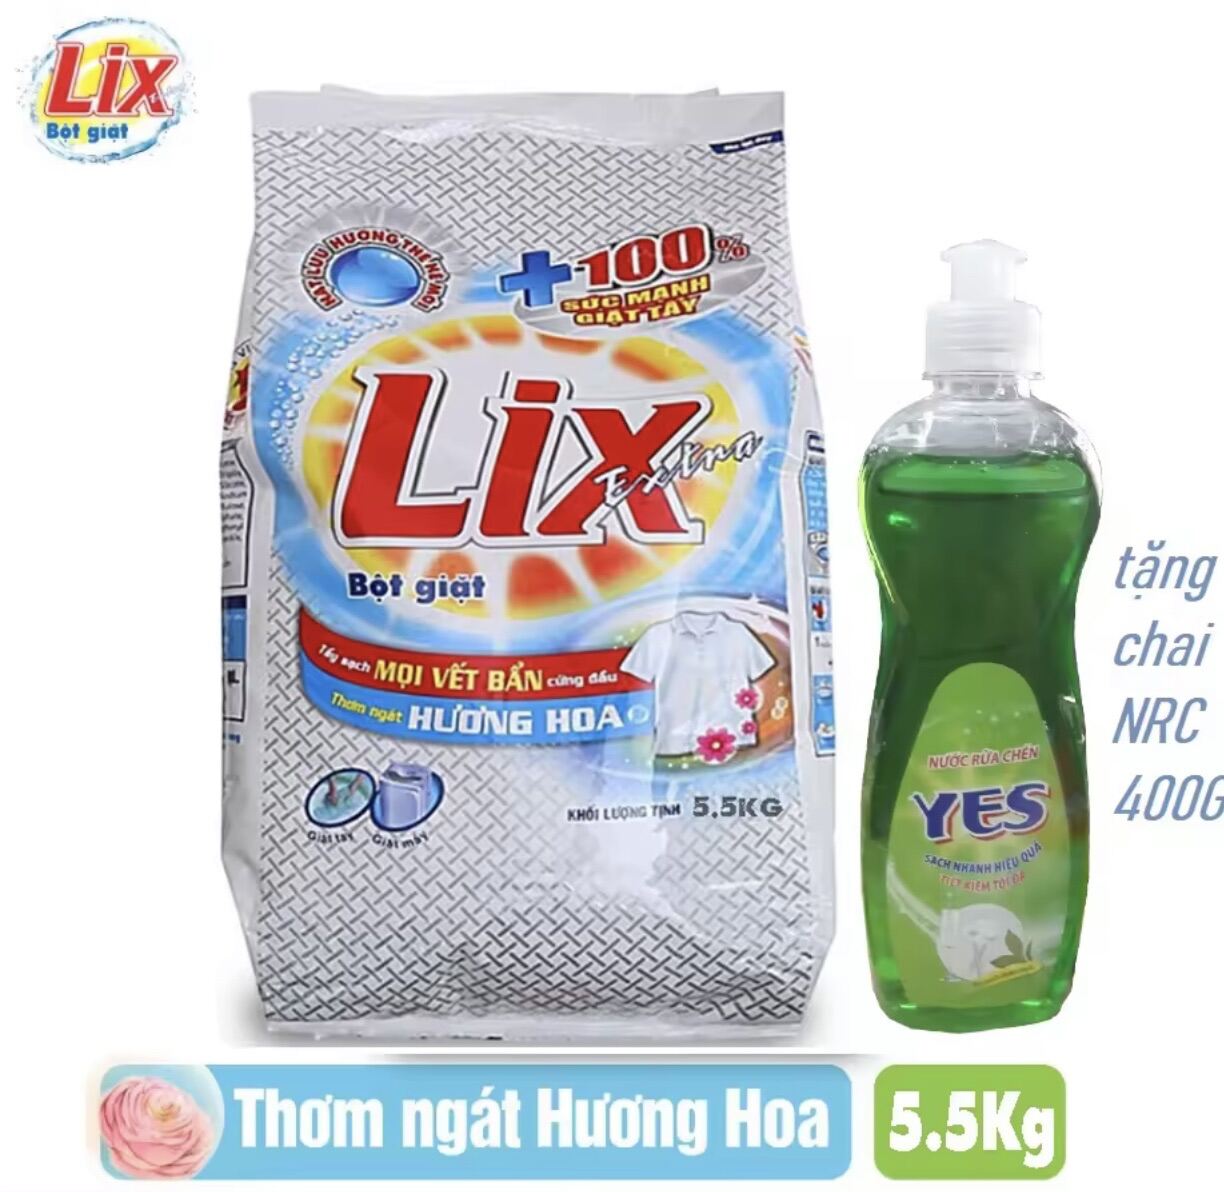 Bột giặt Lix Extra hương hoa túi 5,5kg có tặng nước rửa chén 750g